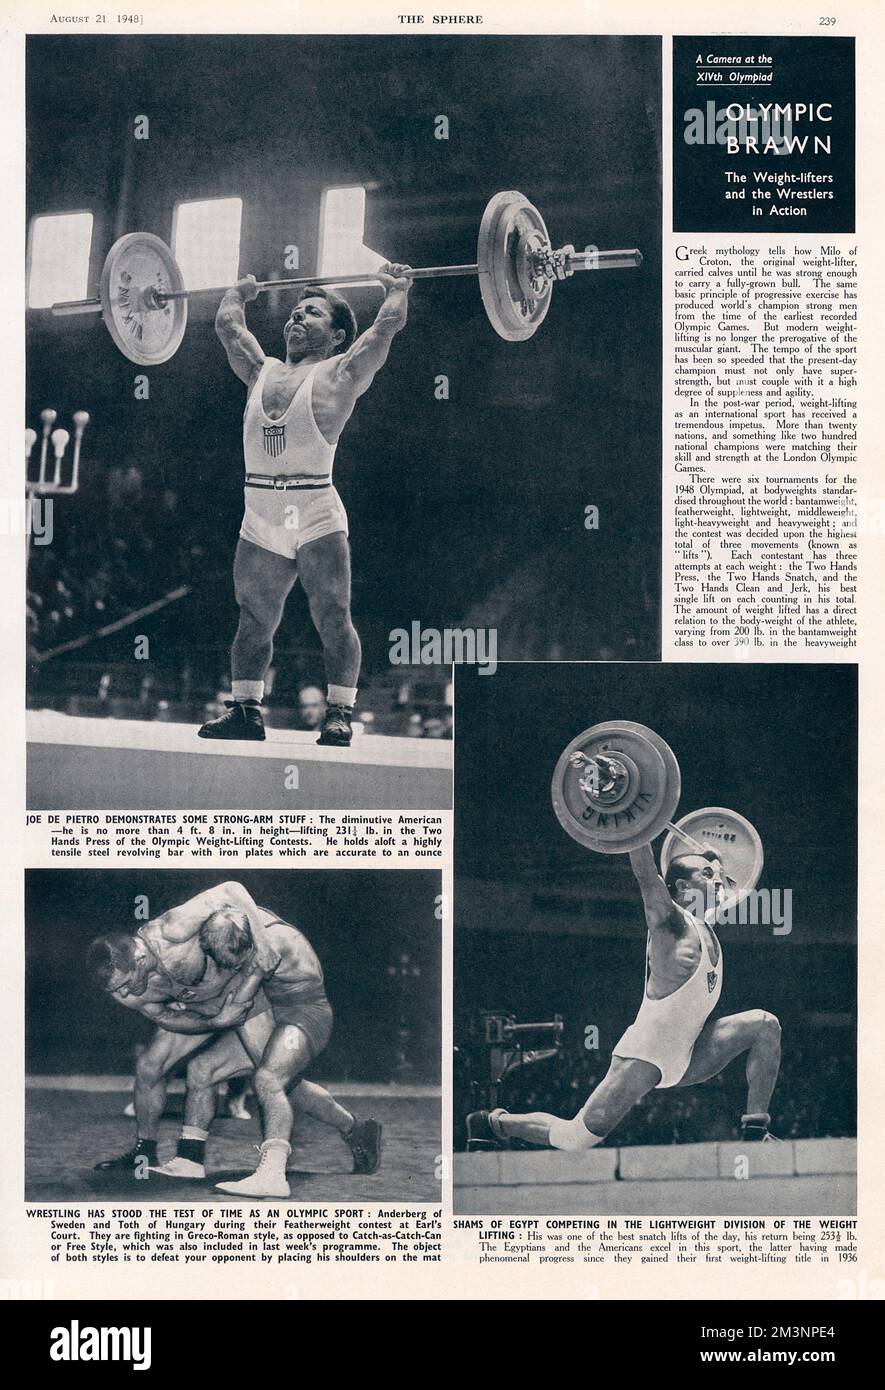 Diese ganze Seite der Sphäre zeigt die Gewichtheber Joe de Pietro von Amerika (oben) und Shams von Ägypten (unten rechts) sowie die Wrestler Anderberg von Schweden und Toth von Ungarn. Datum: 1948 Stockfoto